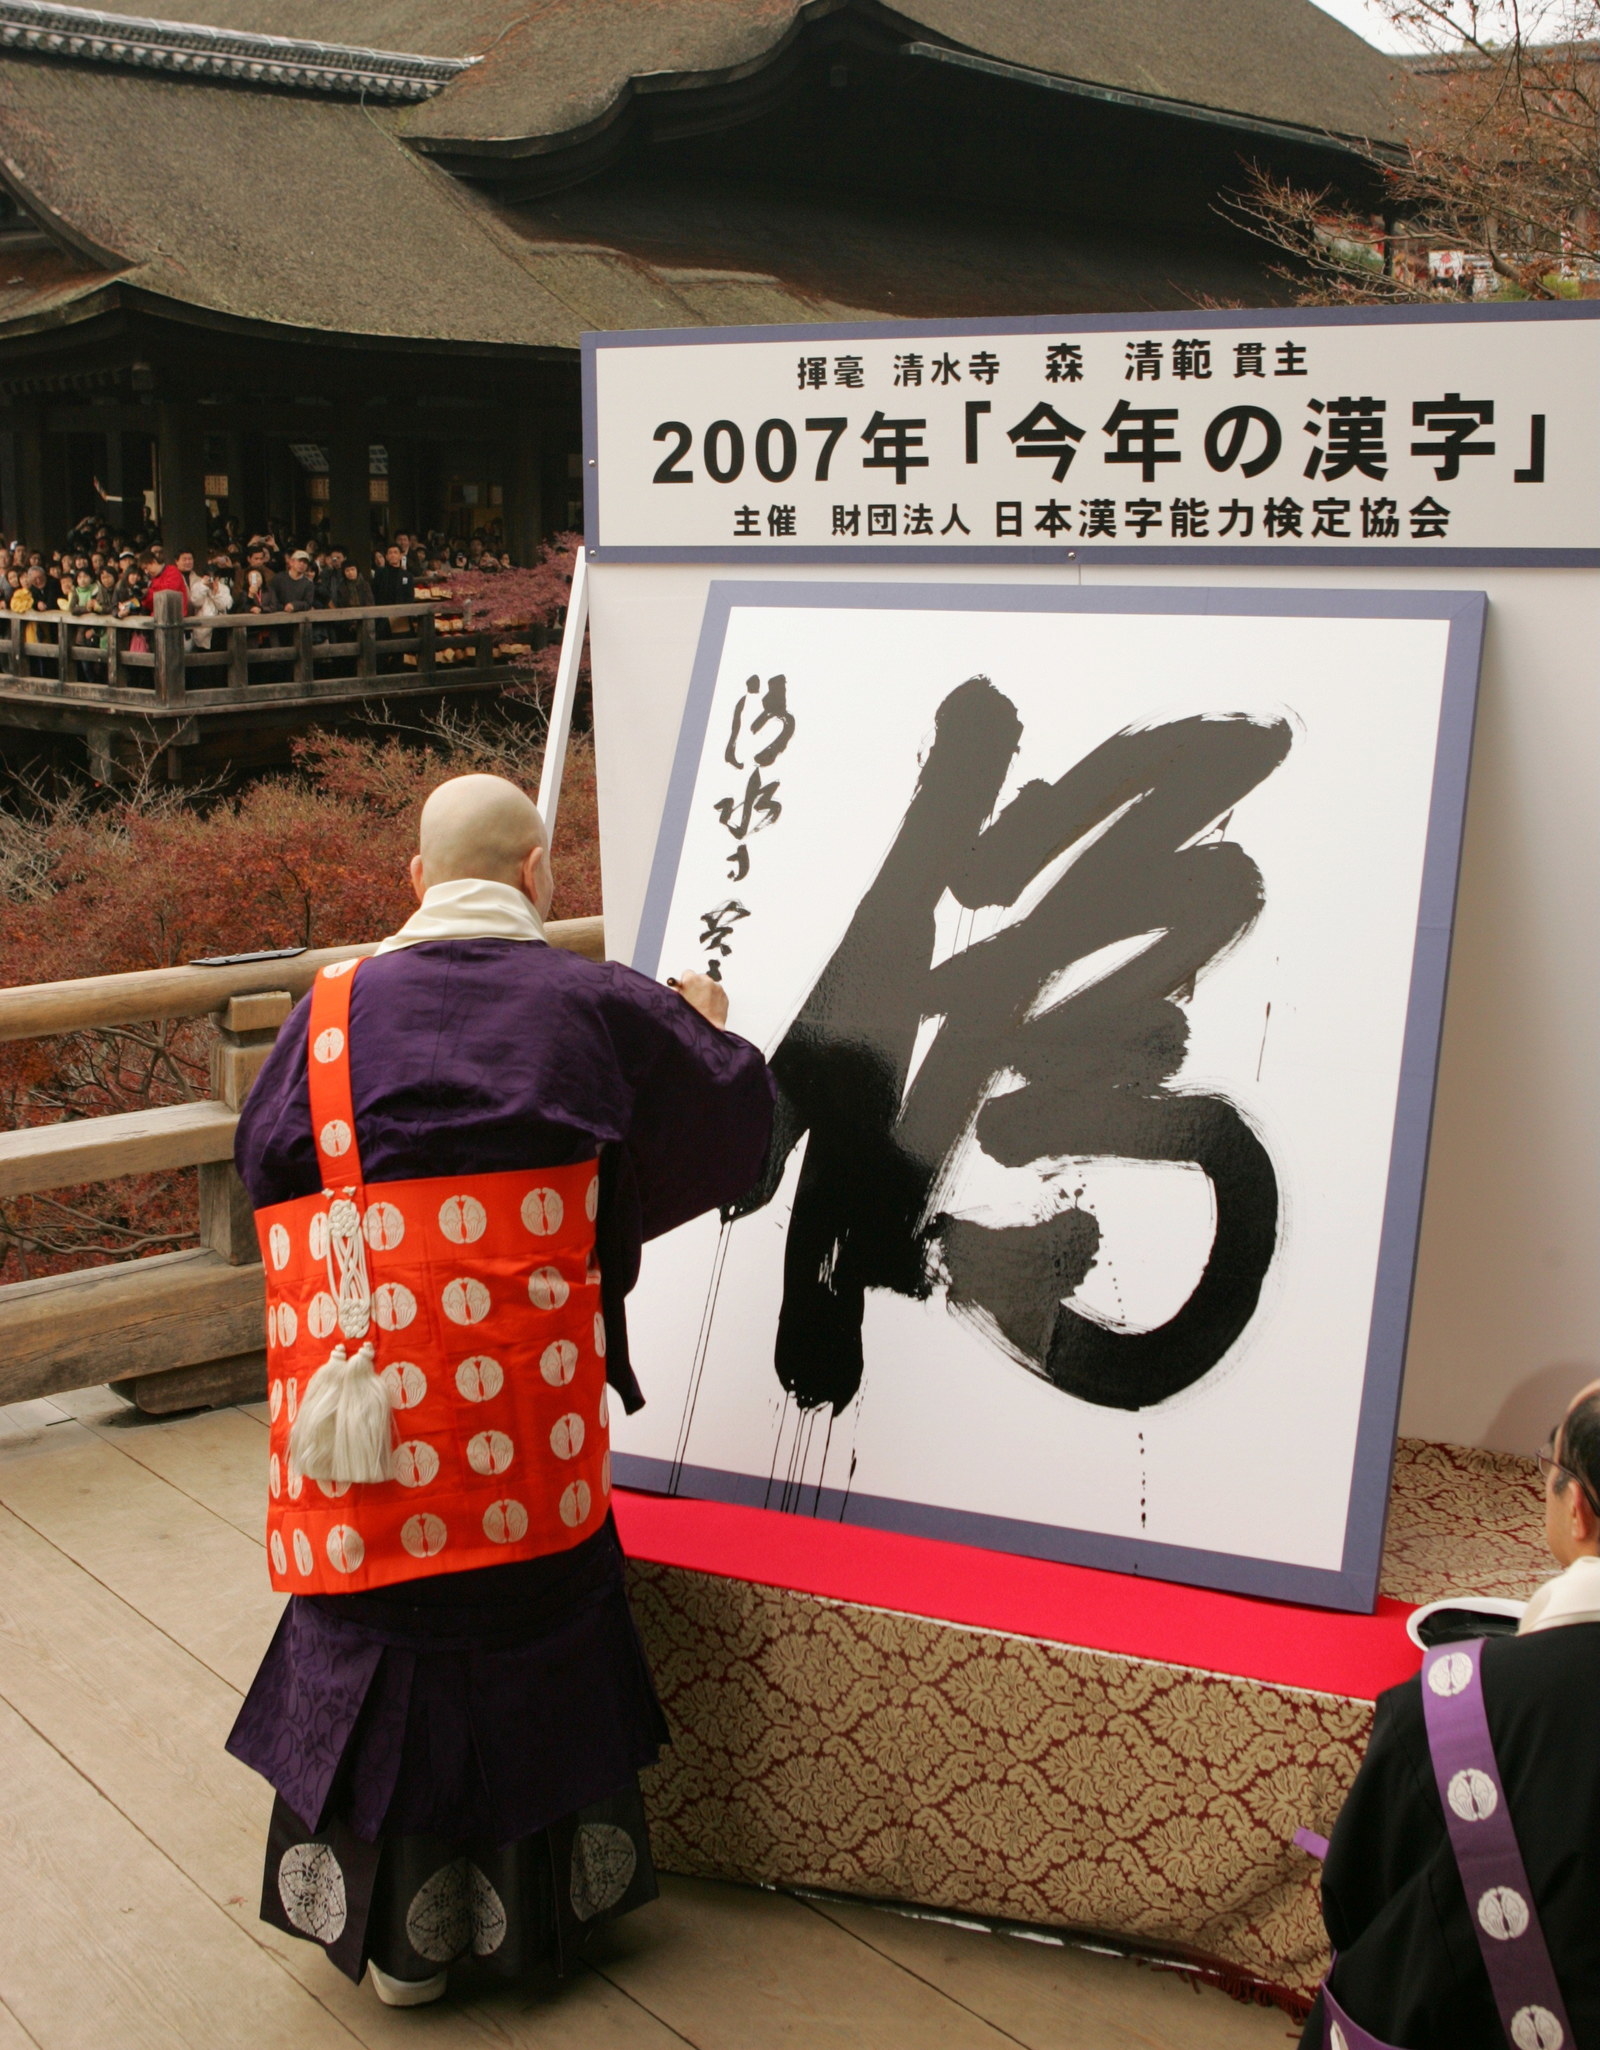 今年の漢字は 災 に決定 10年前の漢字 覚えています